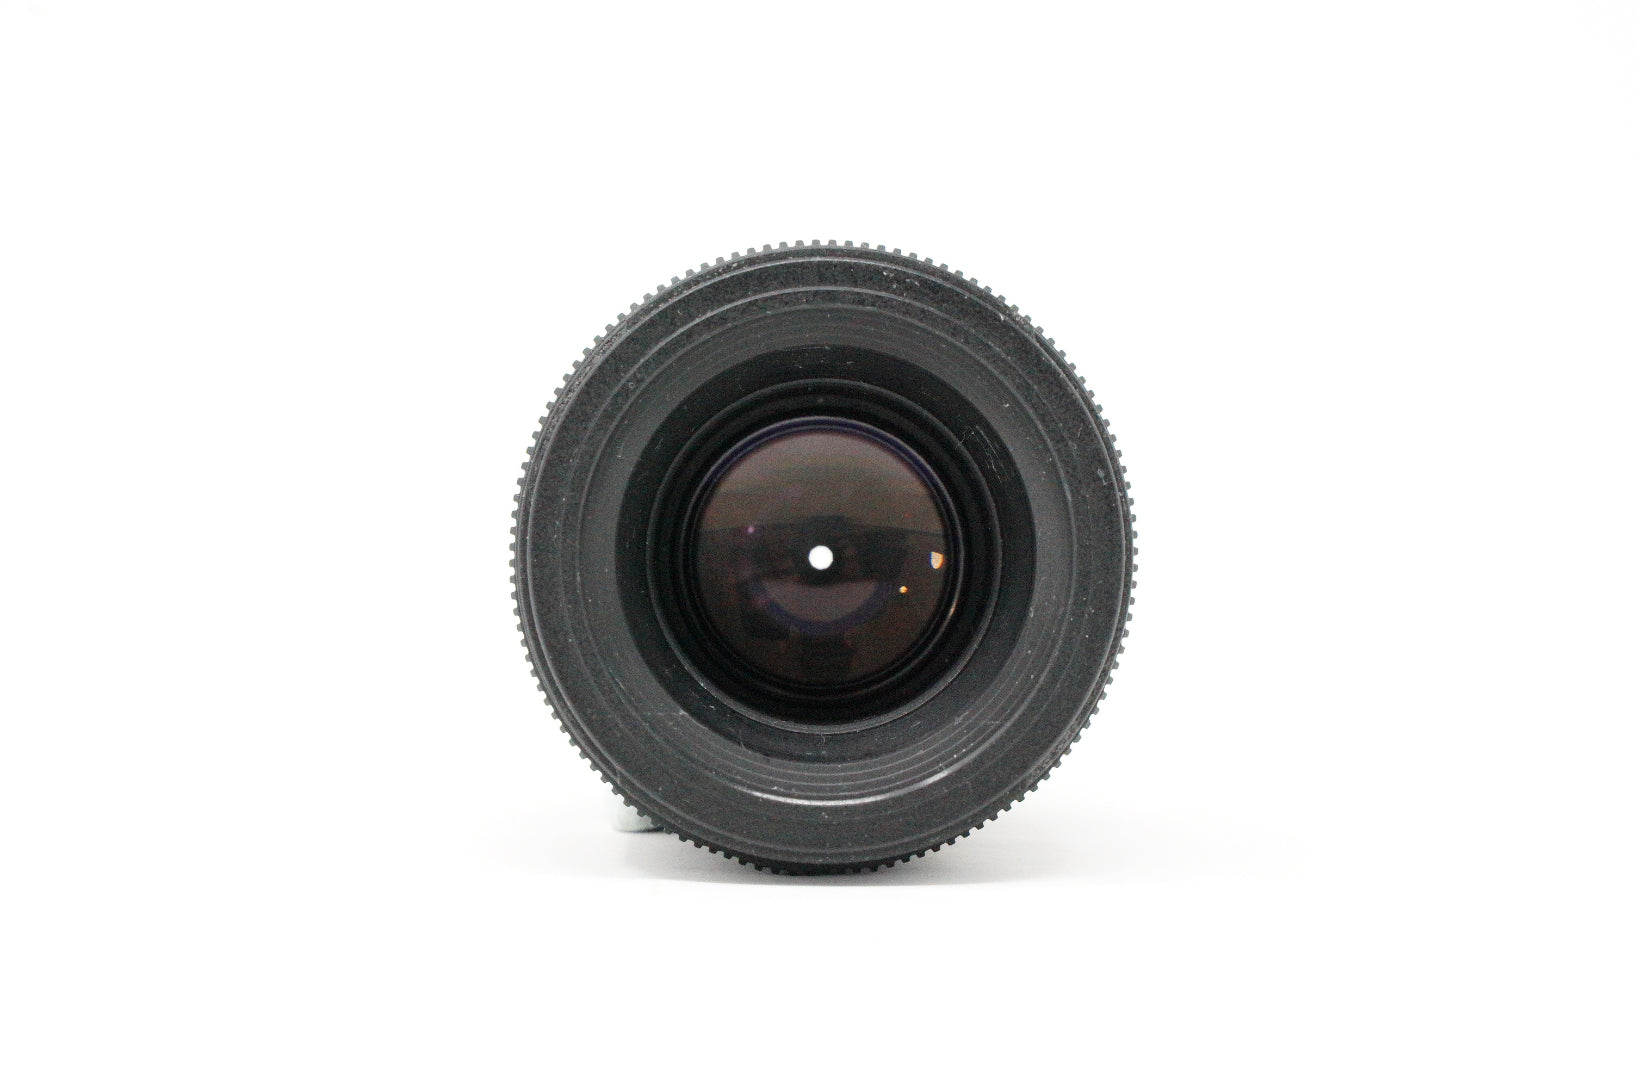 Used Tamron SP AF 90mm F2.8 Di Macro Lens in Nikon F fit